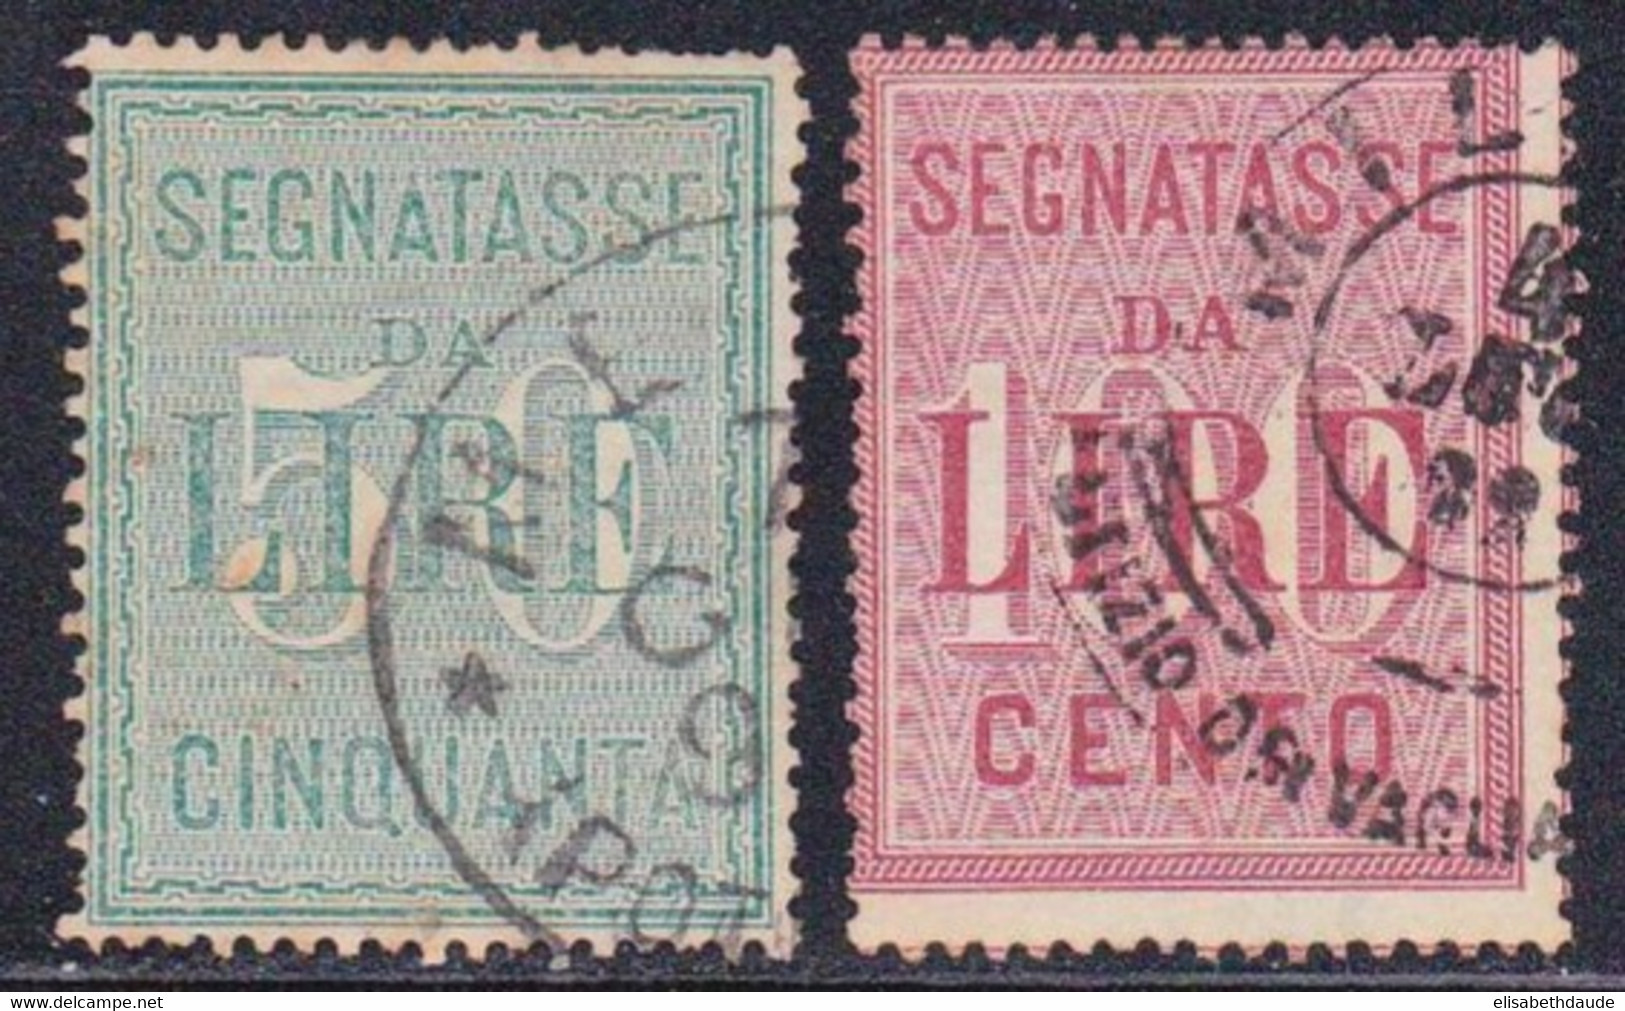 ITALIE - 1884 - YVERT N°20/21 OBLITERES - TAXE - COTE = 60 EUROS - Usati